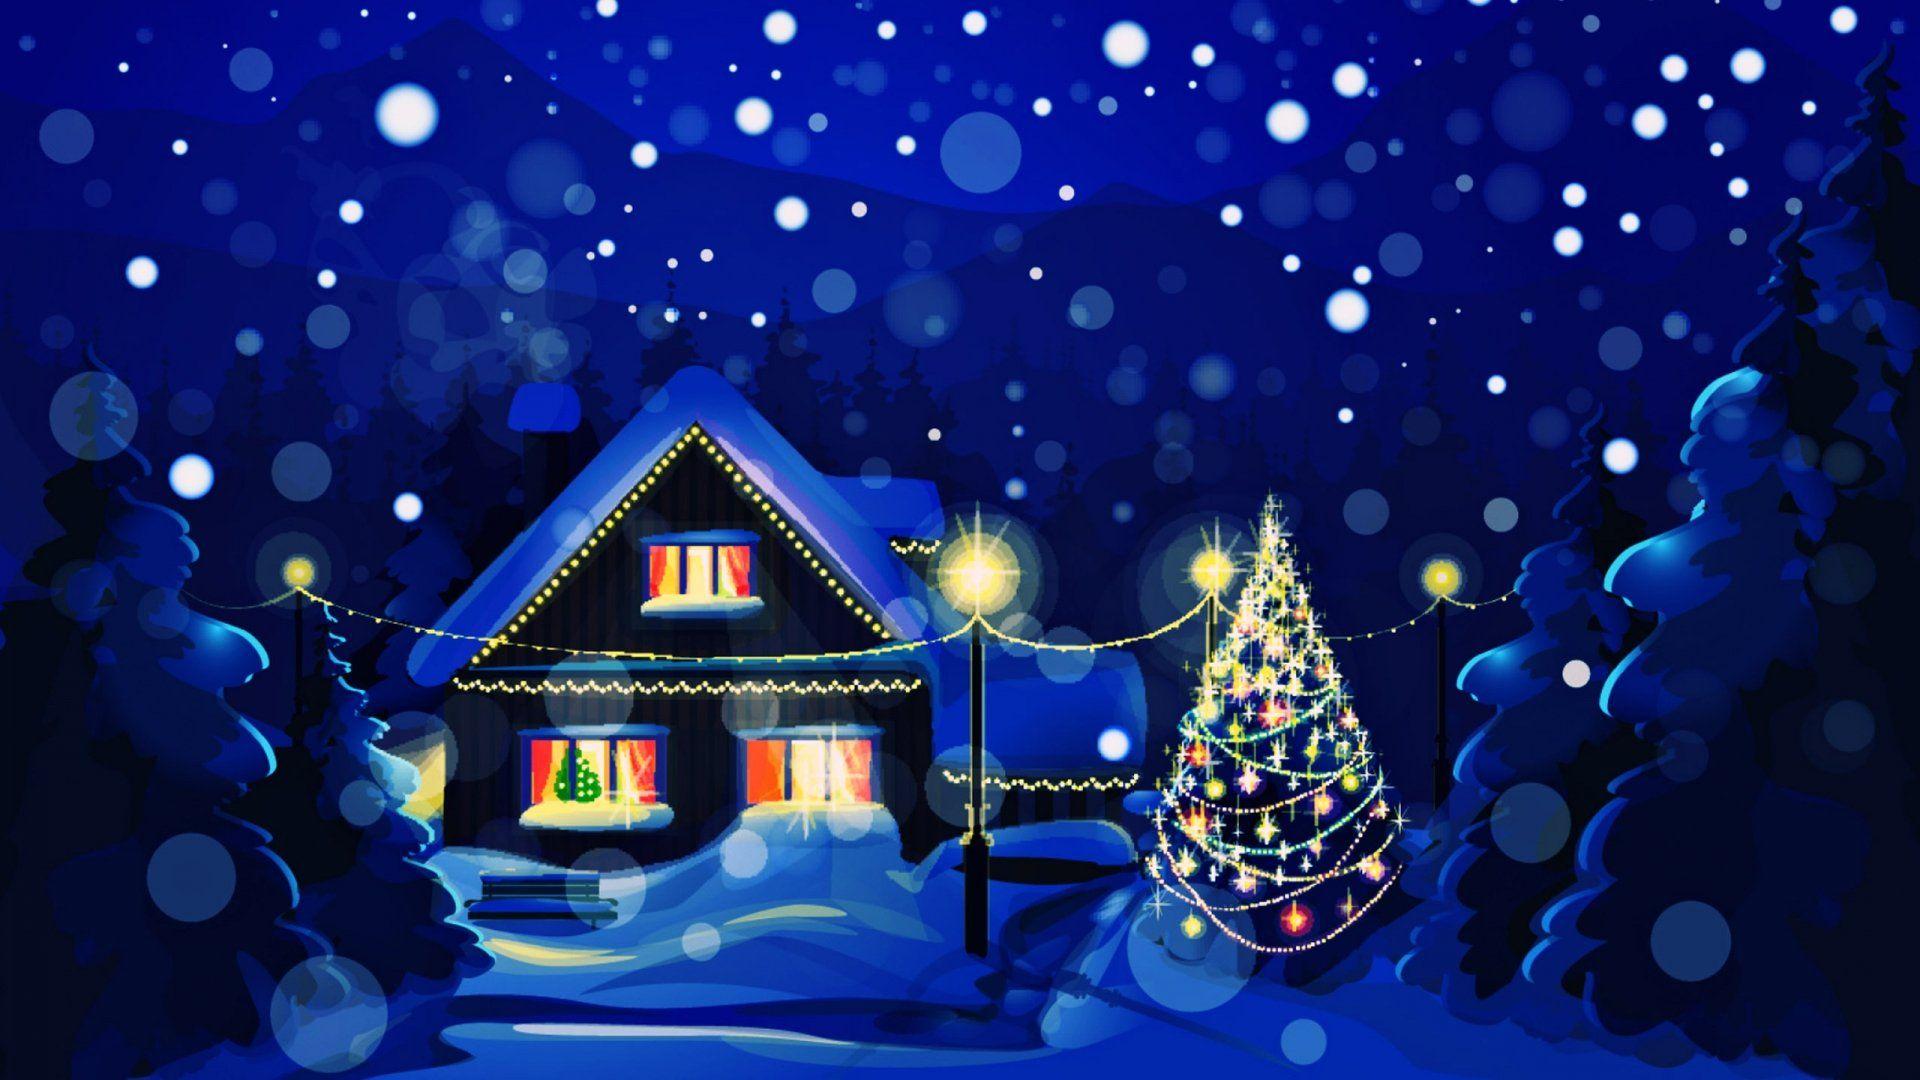 Hãy trang trí cho máy tính của bạn bằng những bức hình nền Giáng sinh vô cùng đẹp mắt, tạo không khí lễ hội ấm áp và đầy niềm vui. Những hình ảnh về cây thông, quà tặng, tuyết rơi sẽ khiến bạn không thể rời mắt.